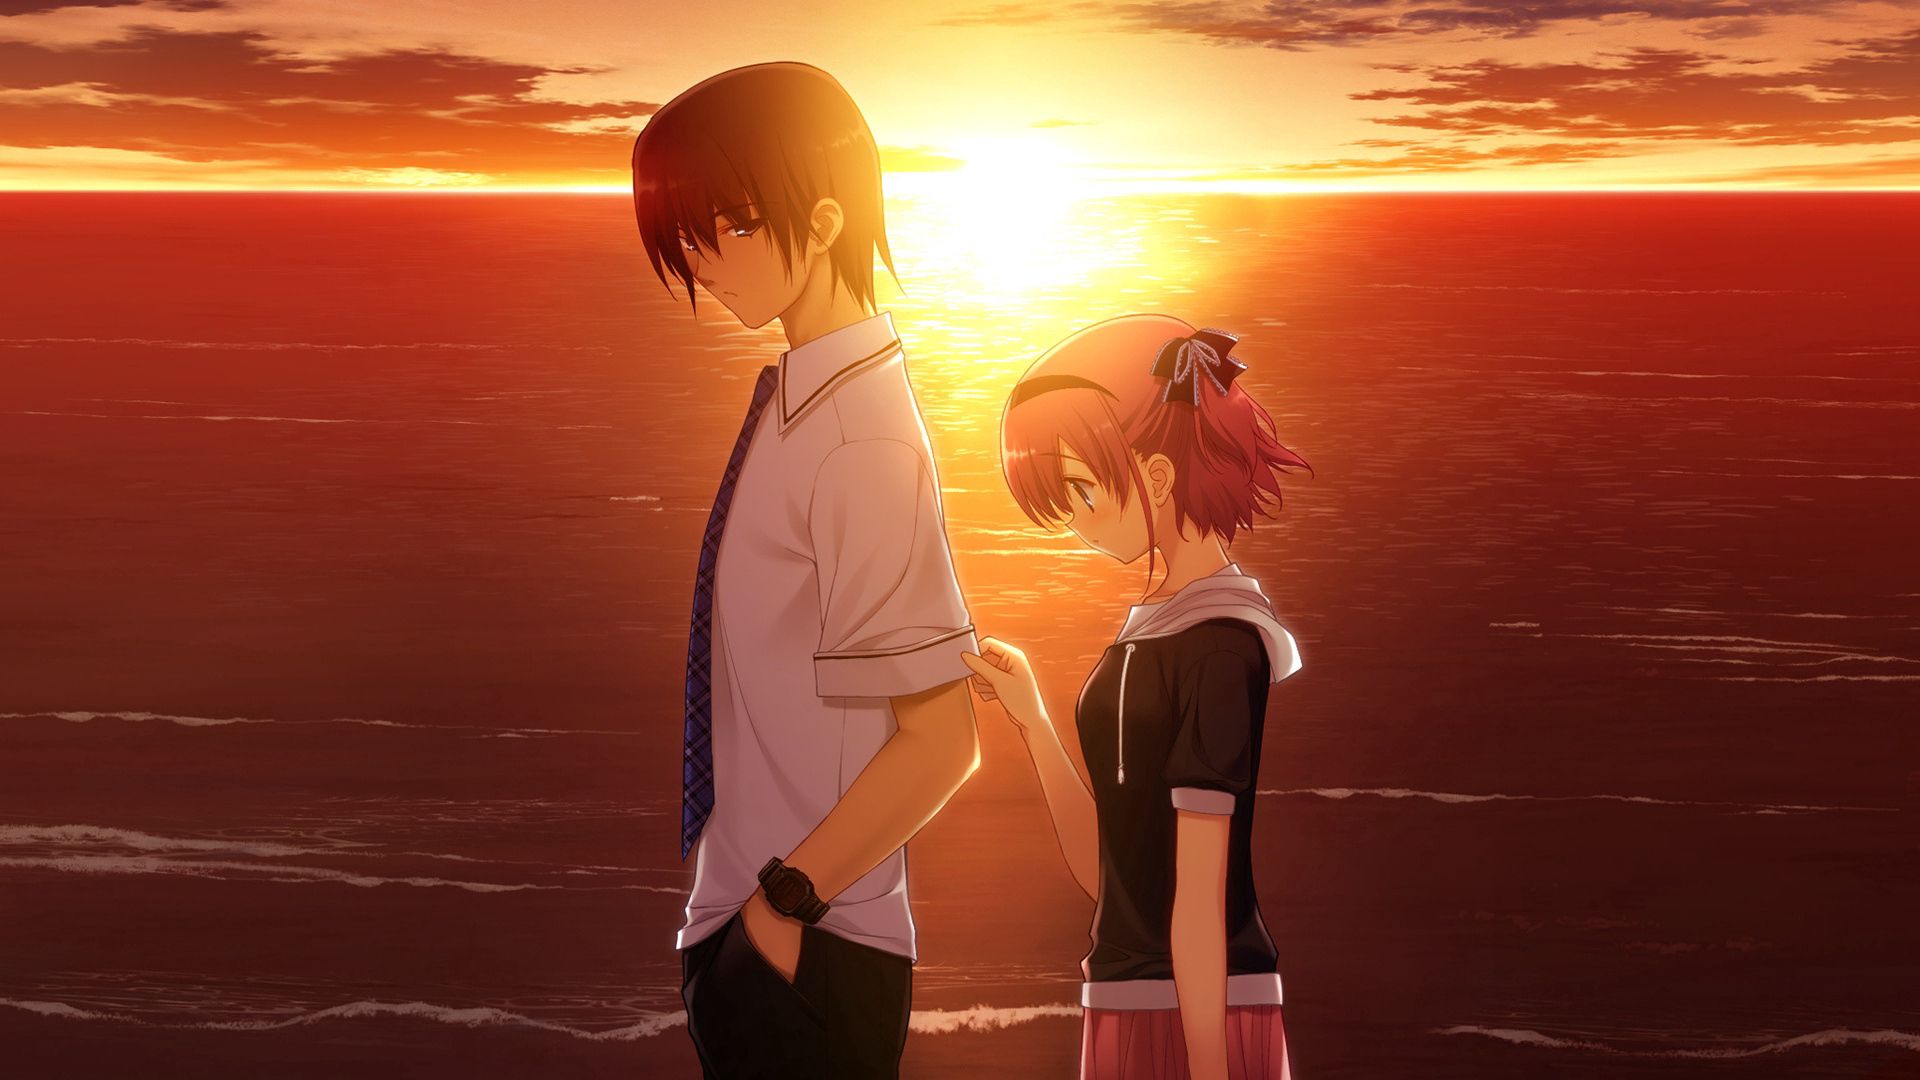 anime, girl, sunset, sadness, guy, sorrow Desktop home screen Wallpaper